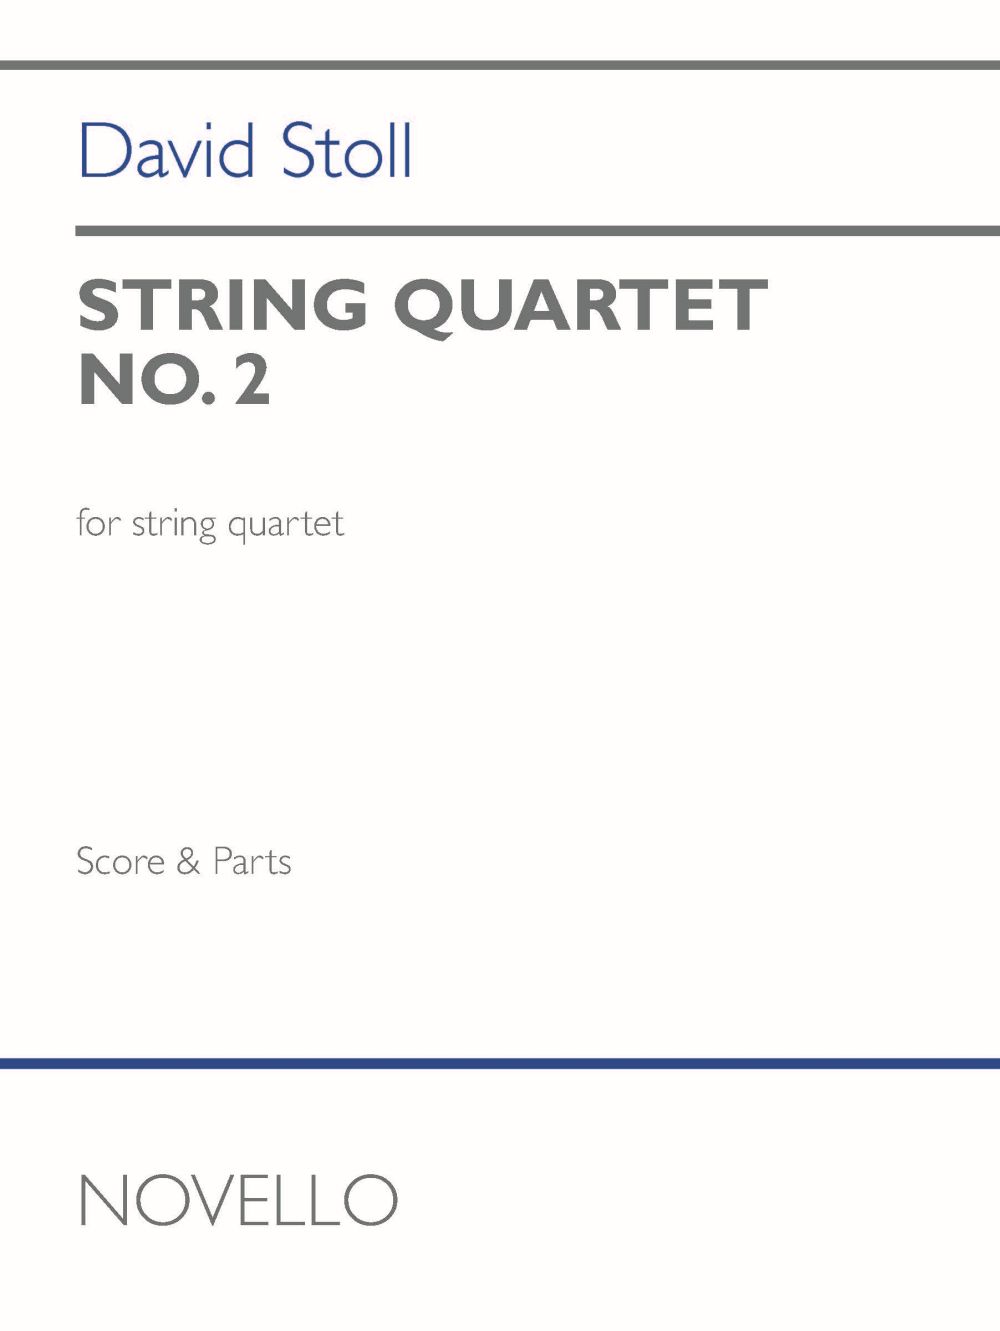 String Quartet No.2 (STOLL DAVID)